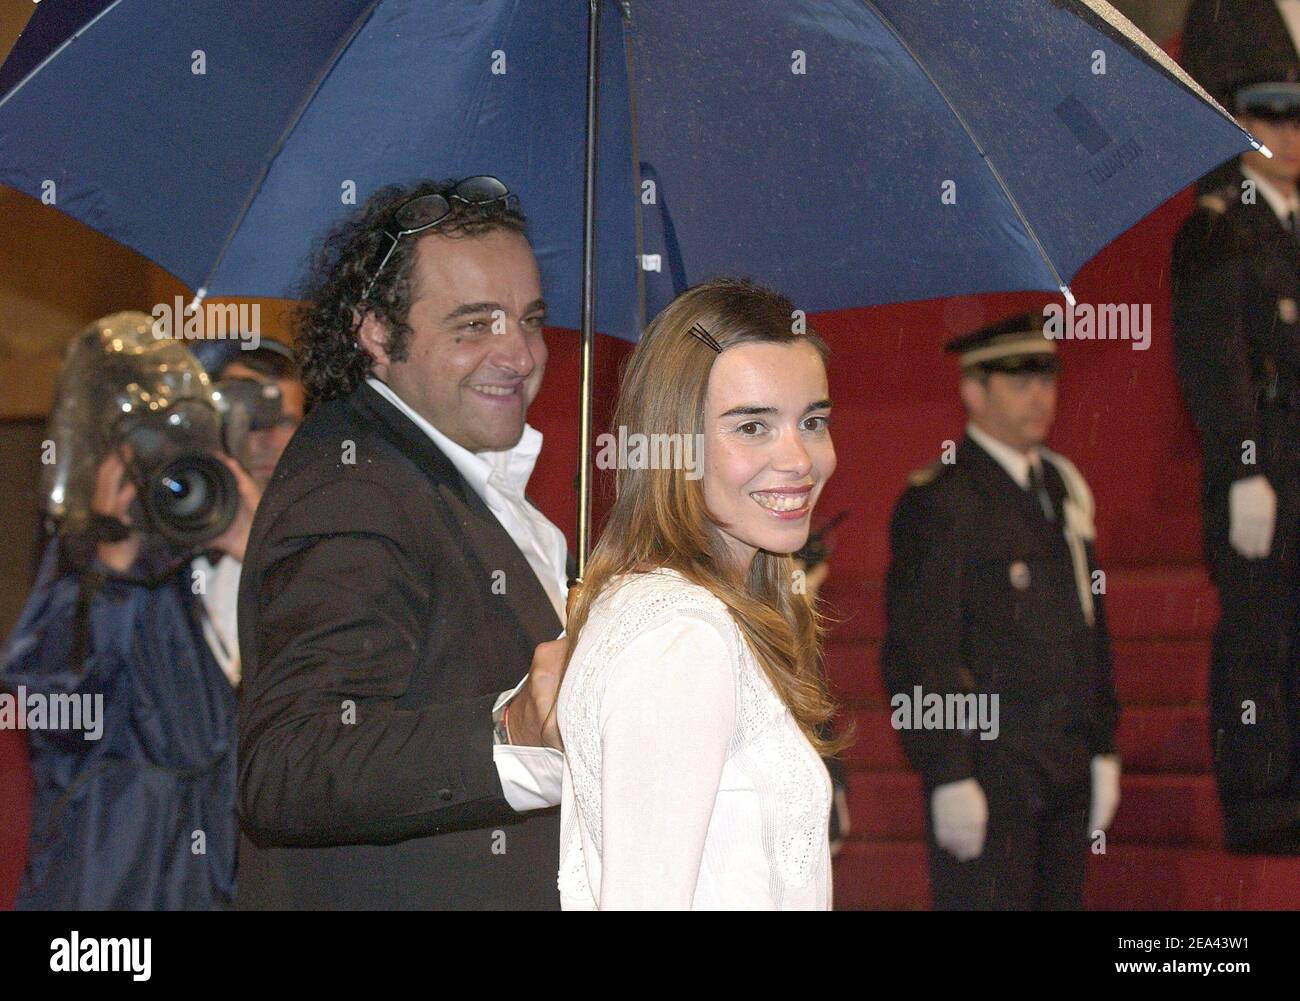 L'attrice francese Elodie Bouchez partecipa alla proiezione del film "il bambino" durante la 58a edizione del Festival Internazionale del Cinema di Cannes, a Cannes, Francia meridionale, il 17 maggio 2005. Foto di Hahn-Klein-Nebinger/ABACA Foto Stock